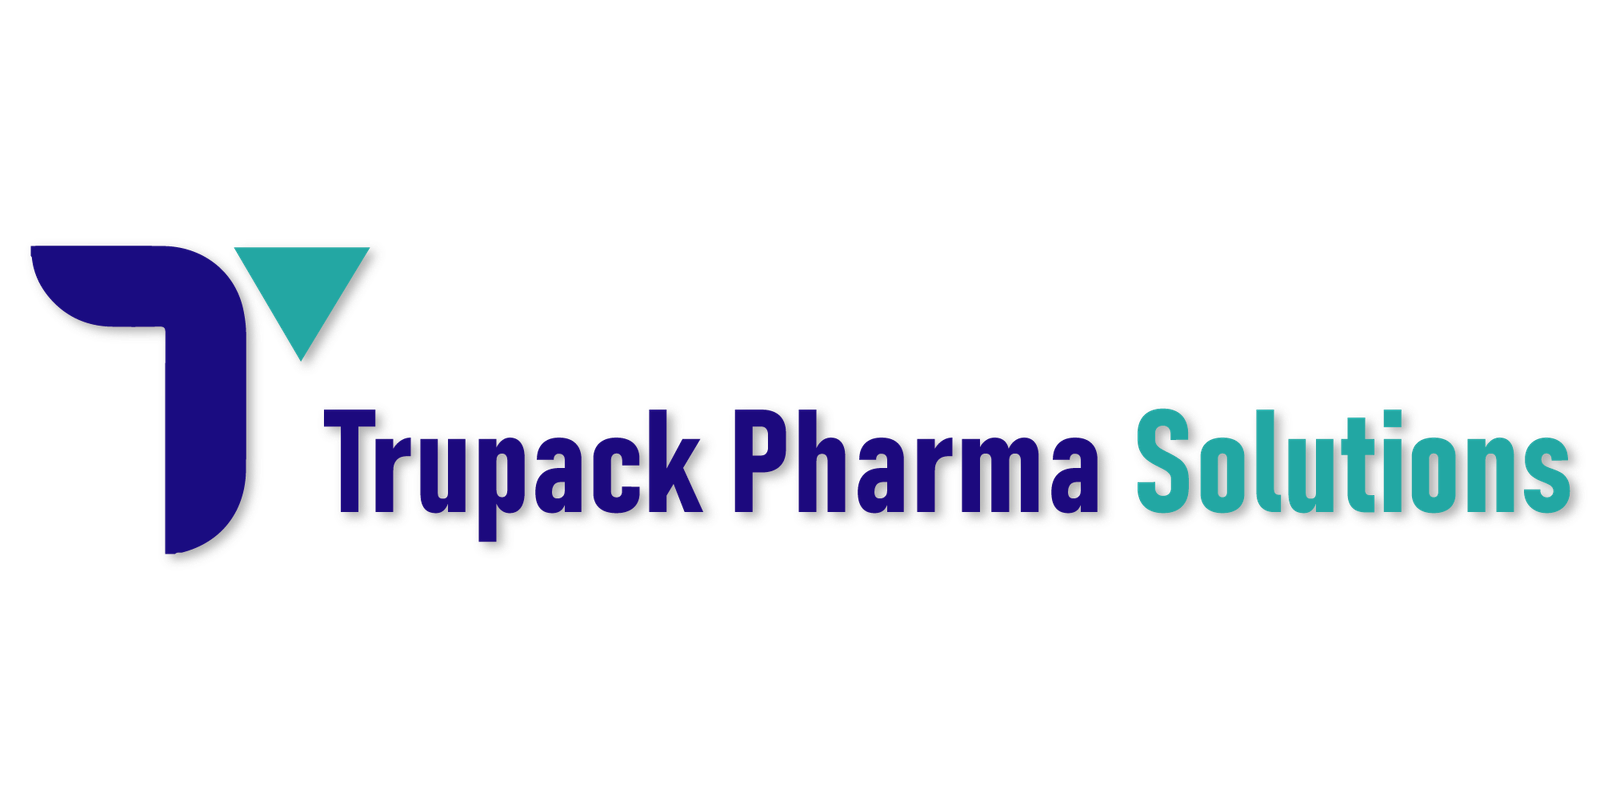 Trupack Pharma Solution